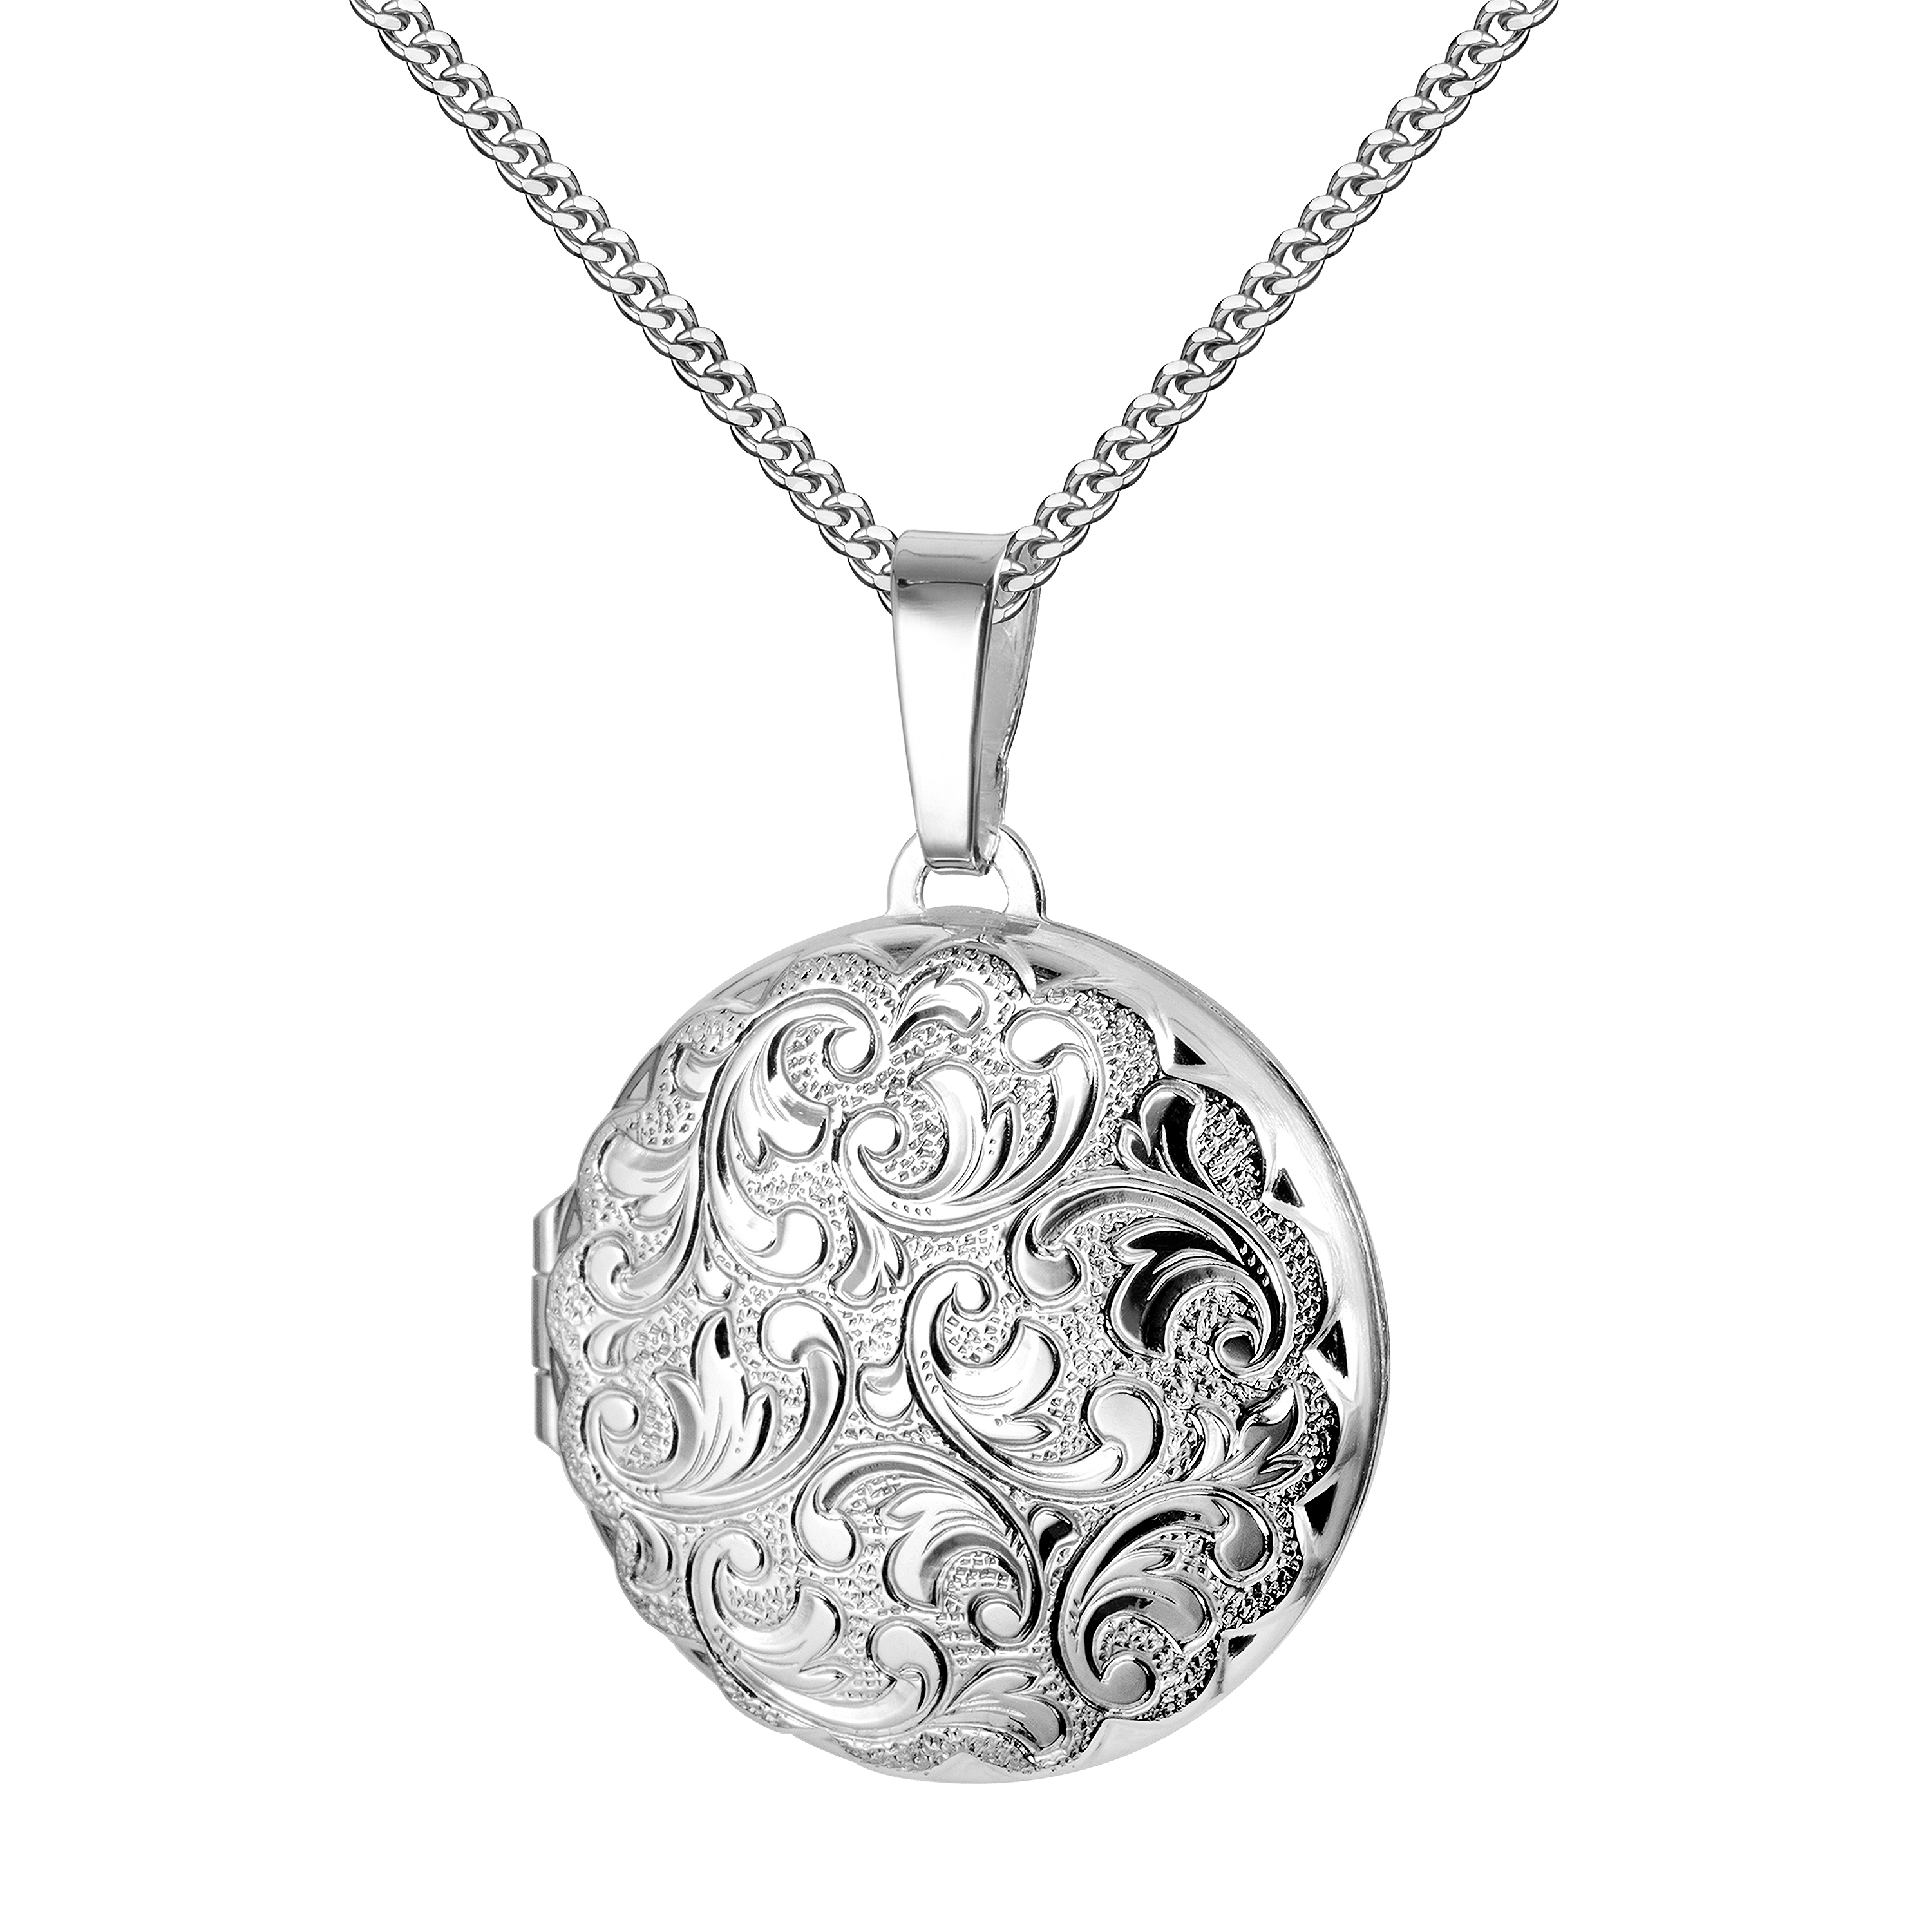 Medaillon Silber 925 runder Amulett Anhänger für 2 Bilder Silberamulett und Schmuck-Etui